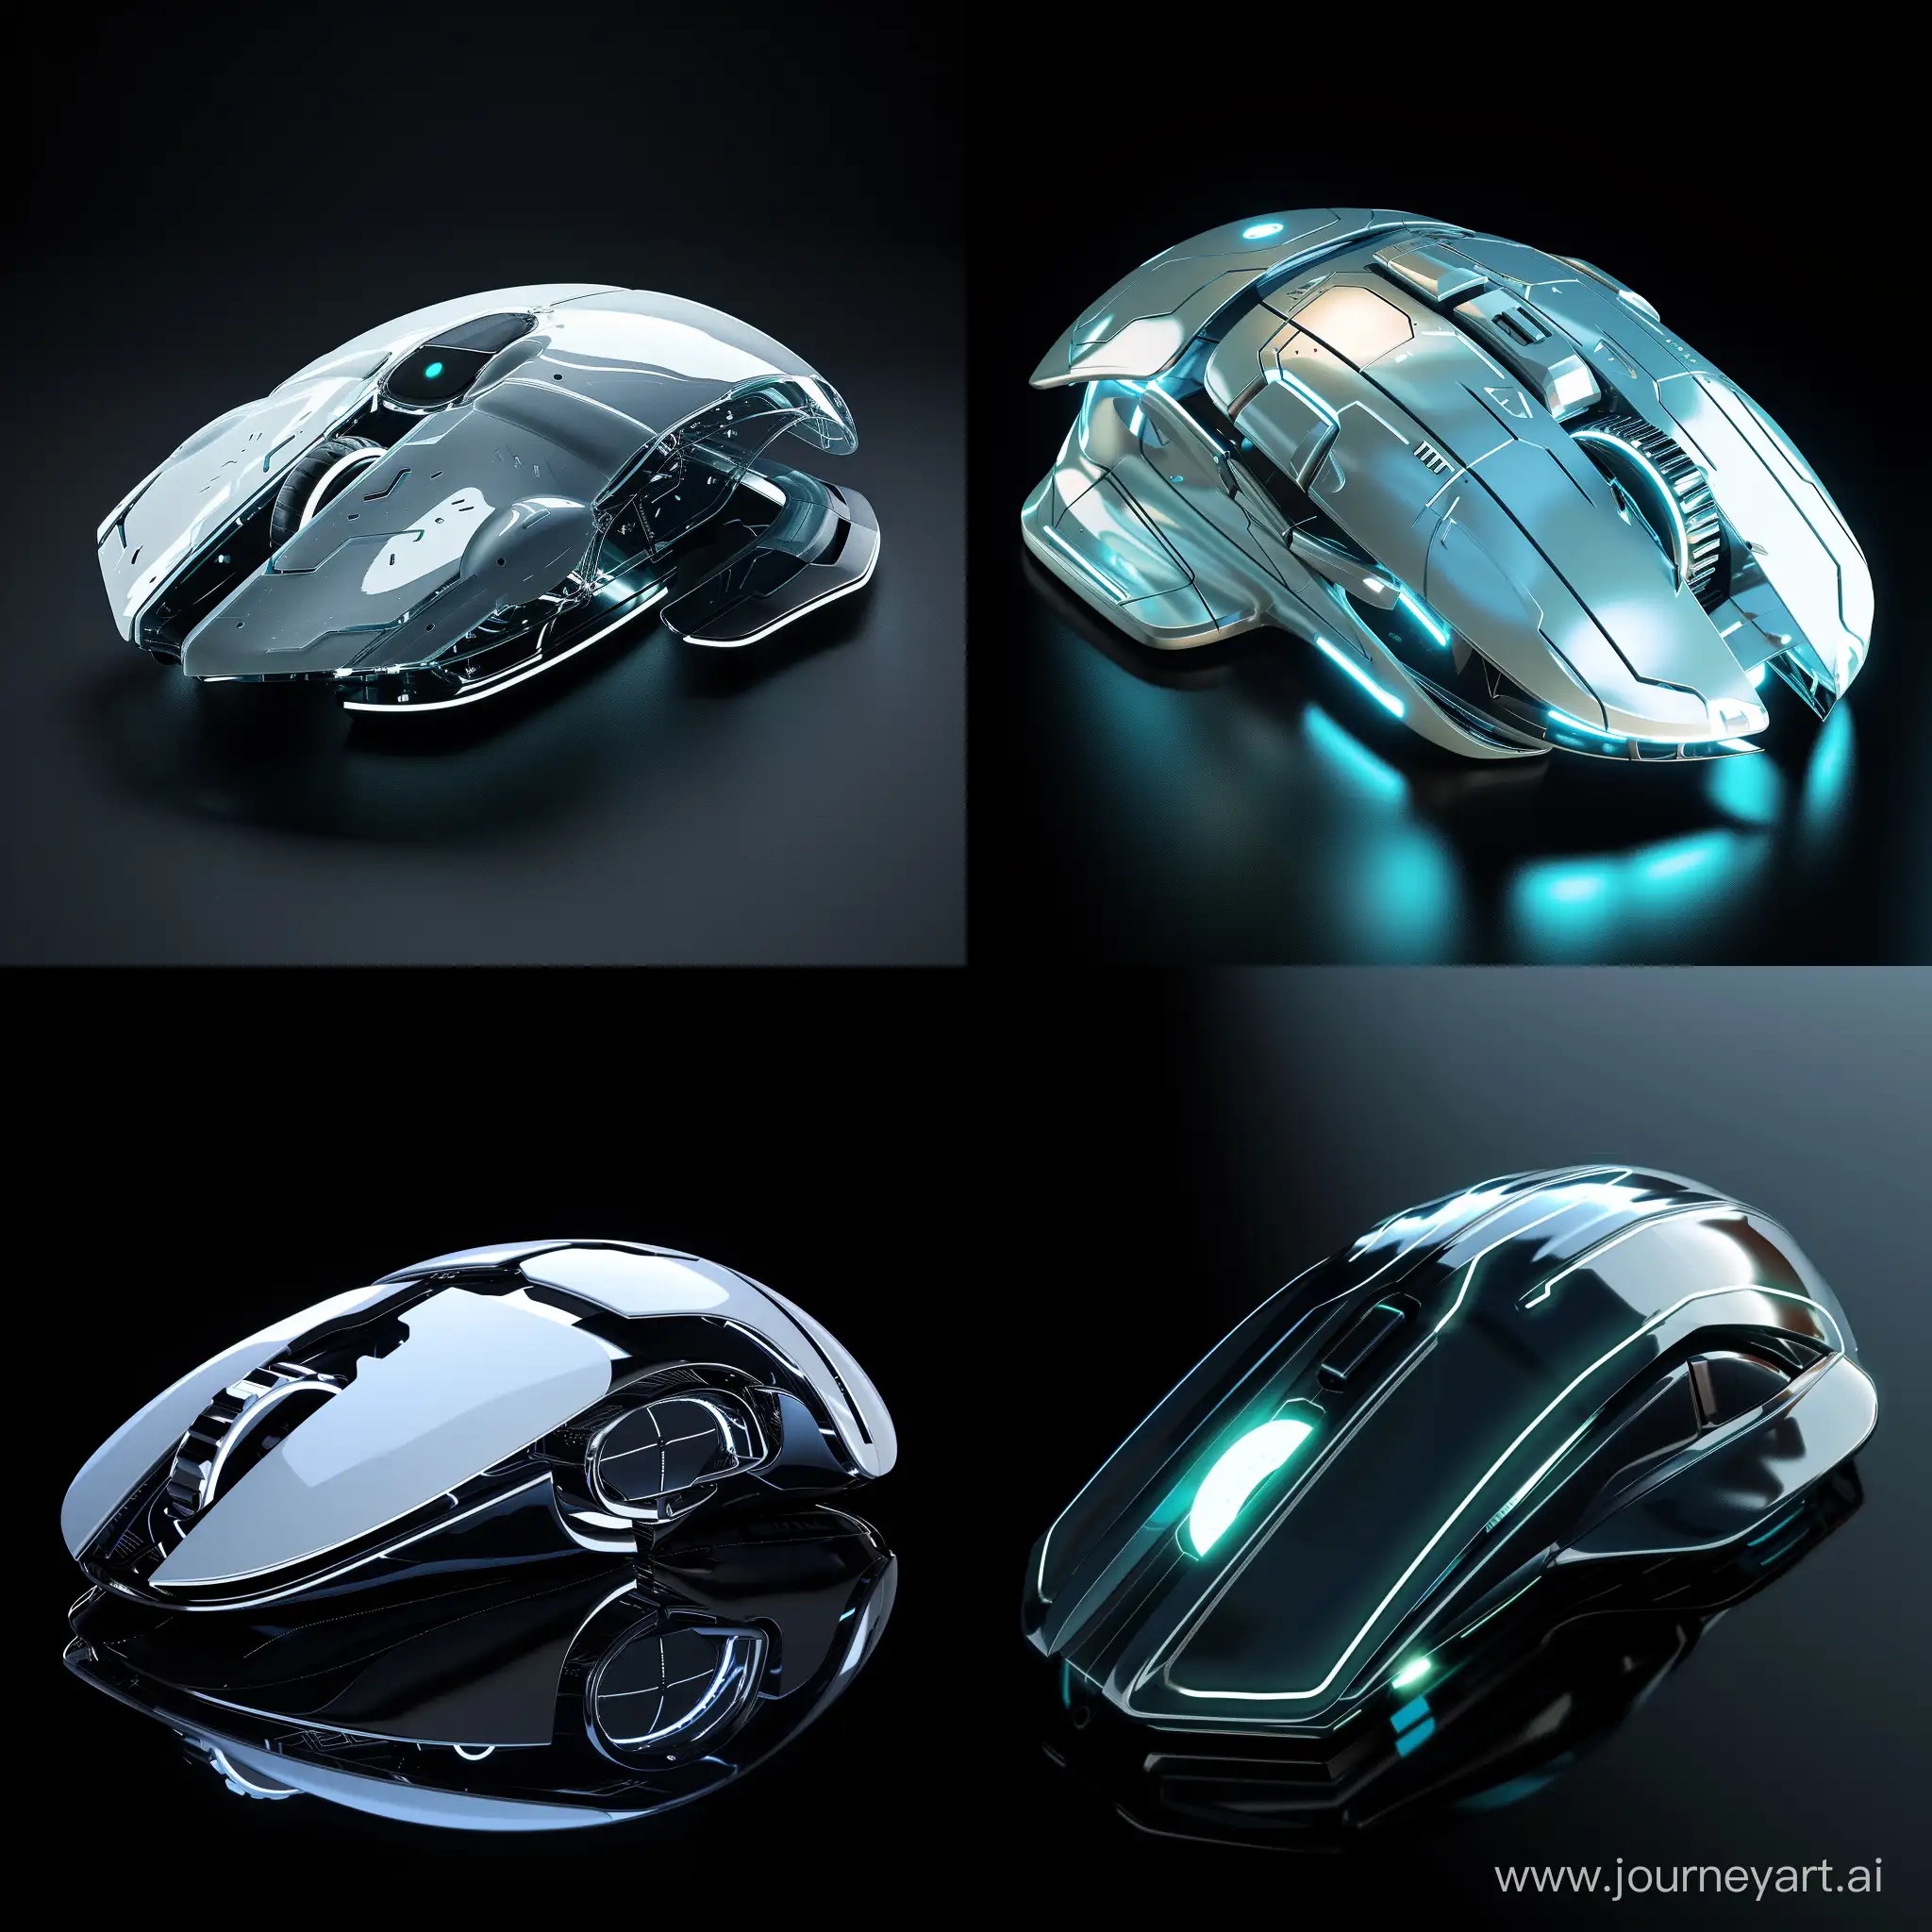 Futuristic-PC-Mouse-with-CuttingEdge-Design